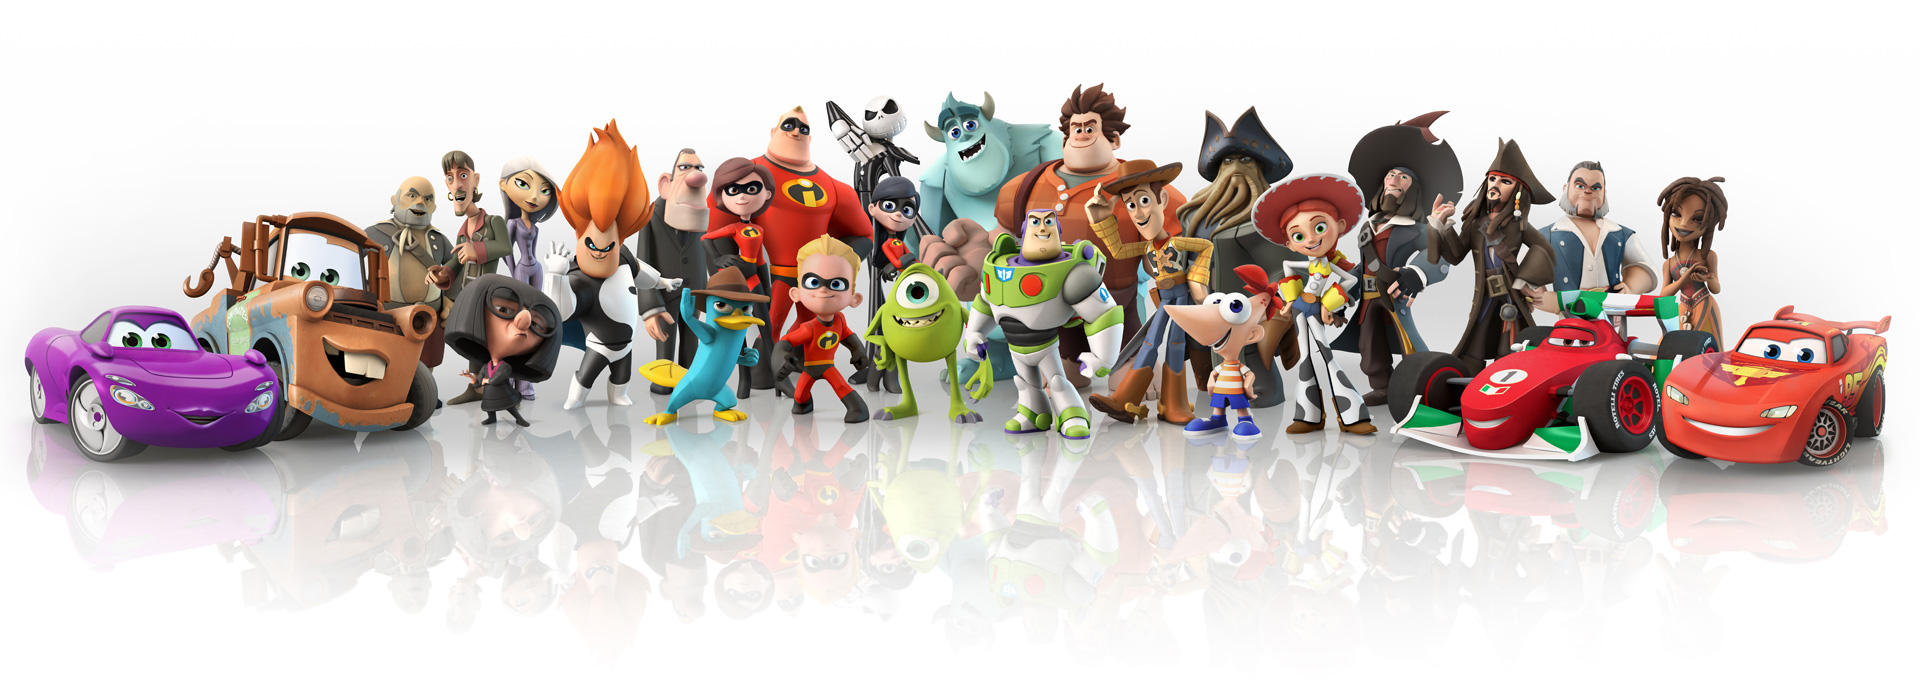 Disney Infinity Pixar Wiki Fandom Powered By Wikia